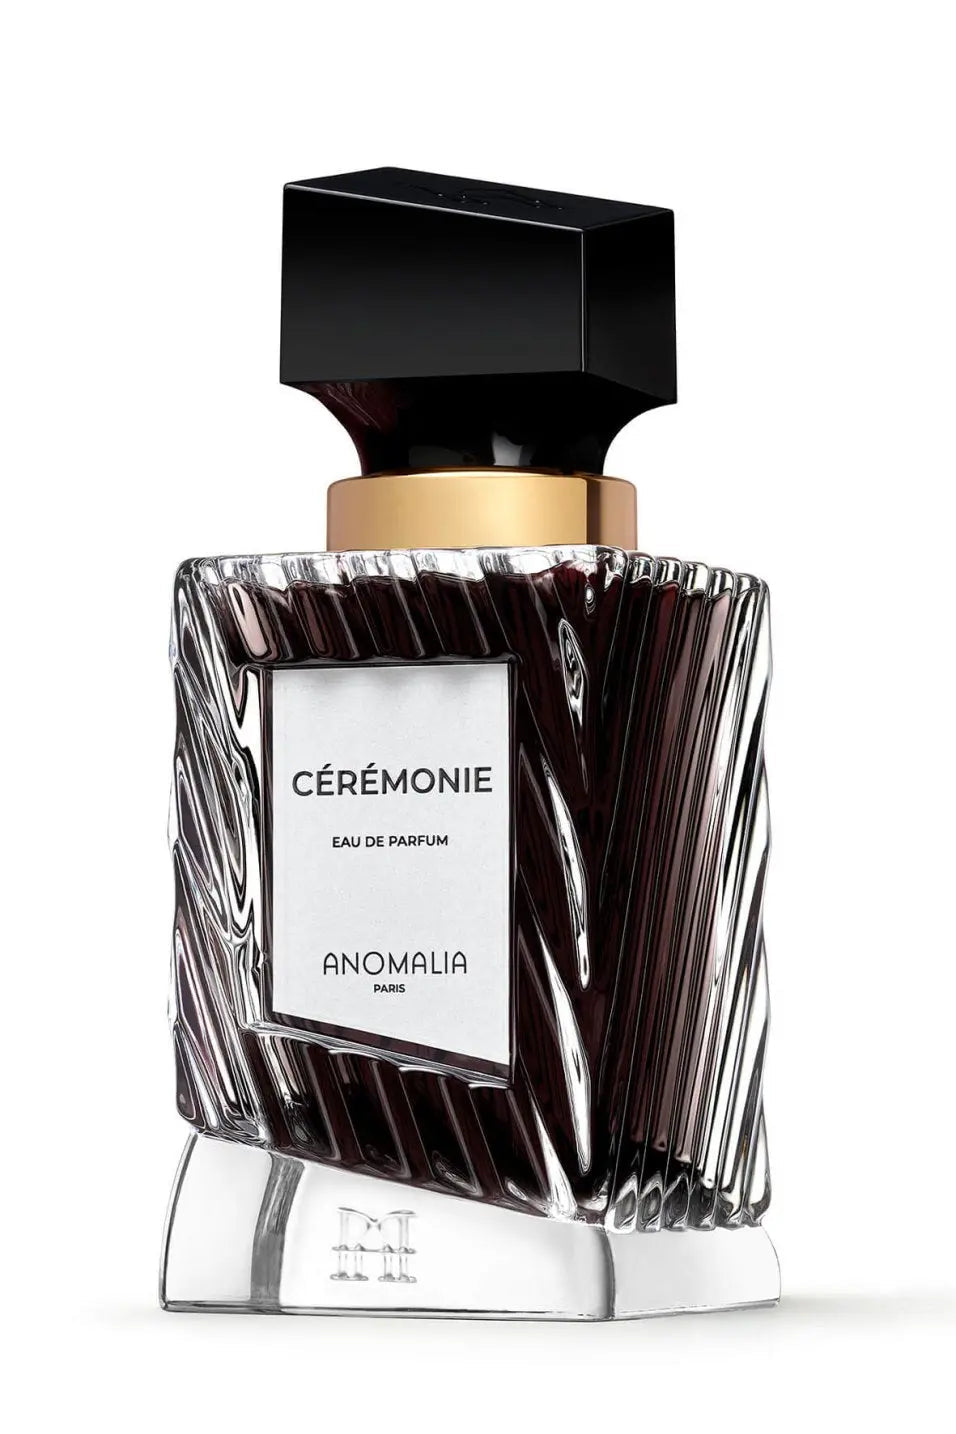 Anomalia Eau de parfum Cérémonie - 70 ml